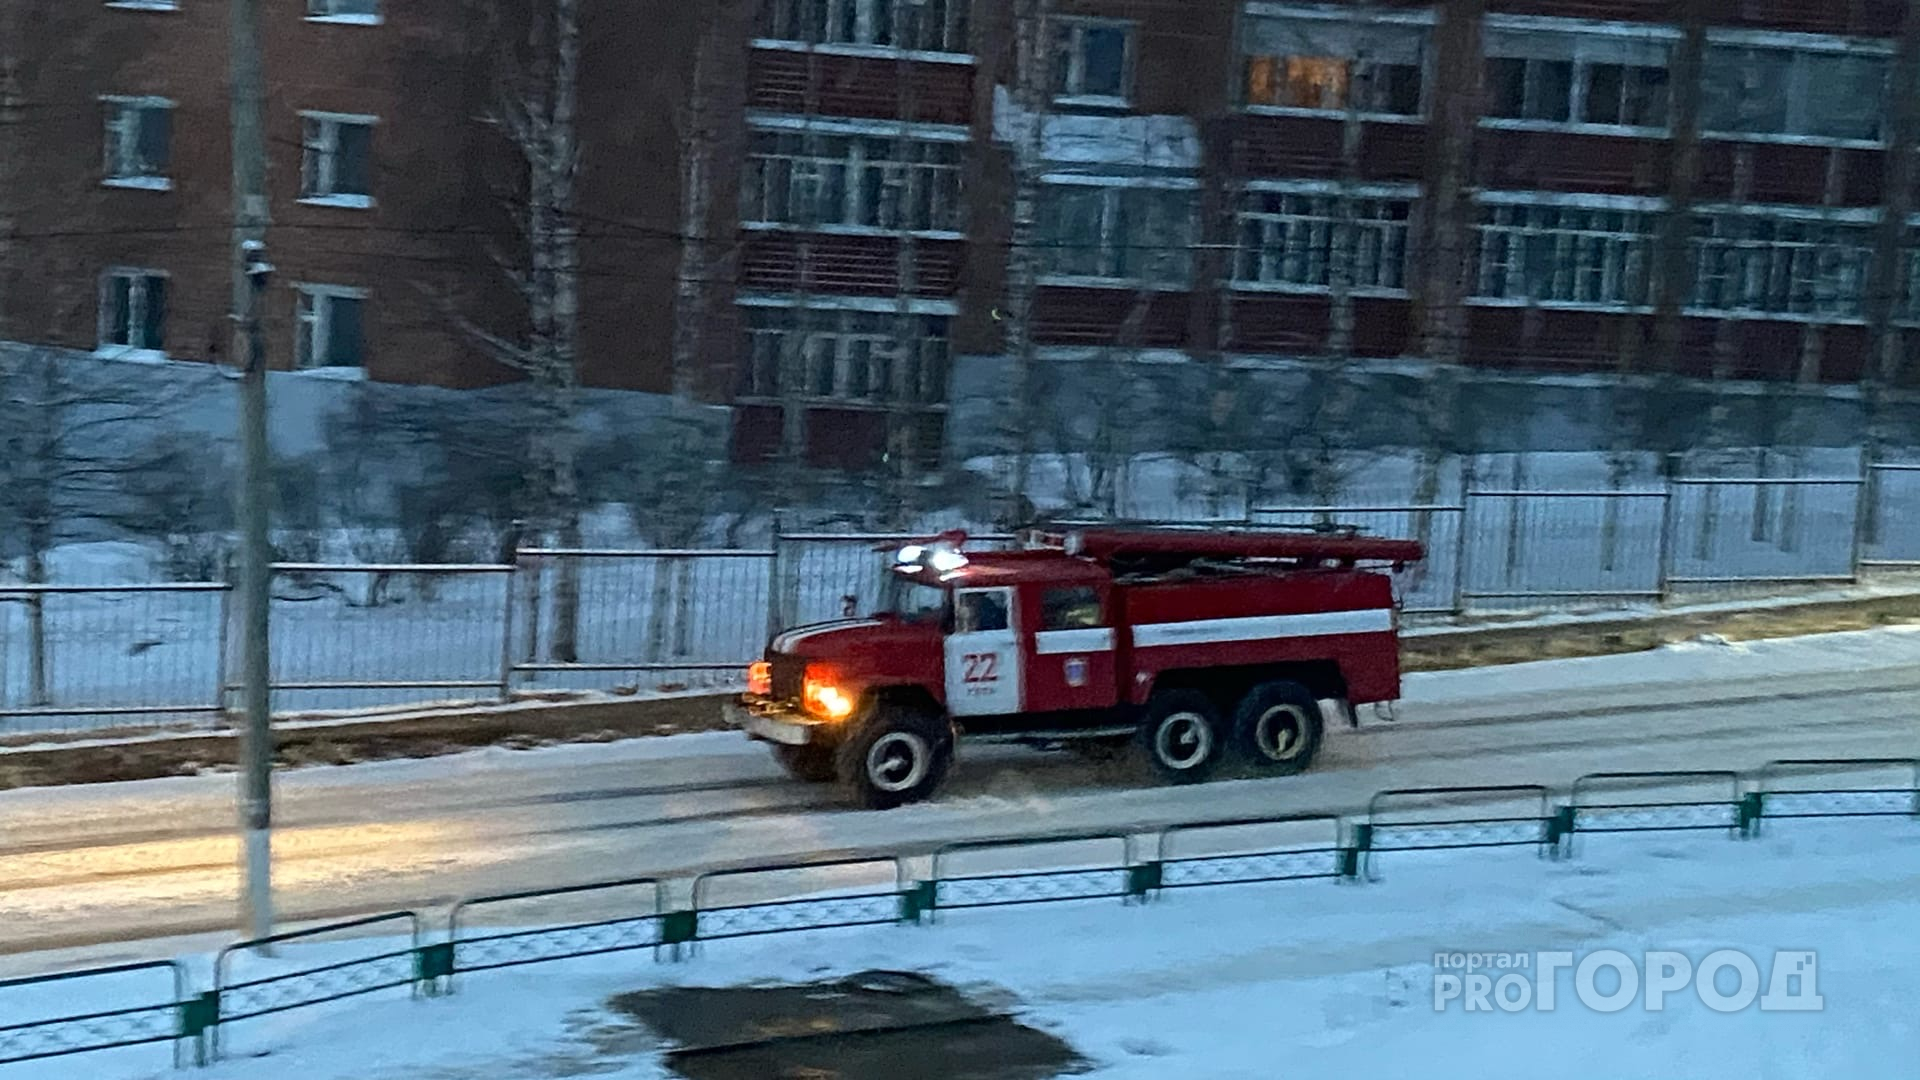 Пожар в новогоднюю ночь: ухтинские огнеборцы спасли из горящего дома 13 человек